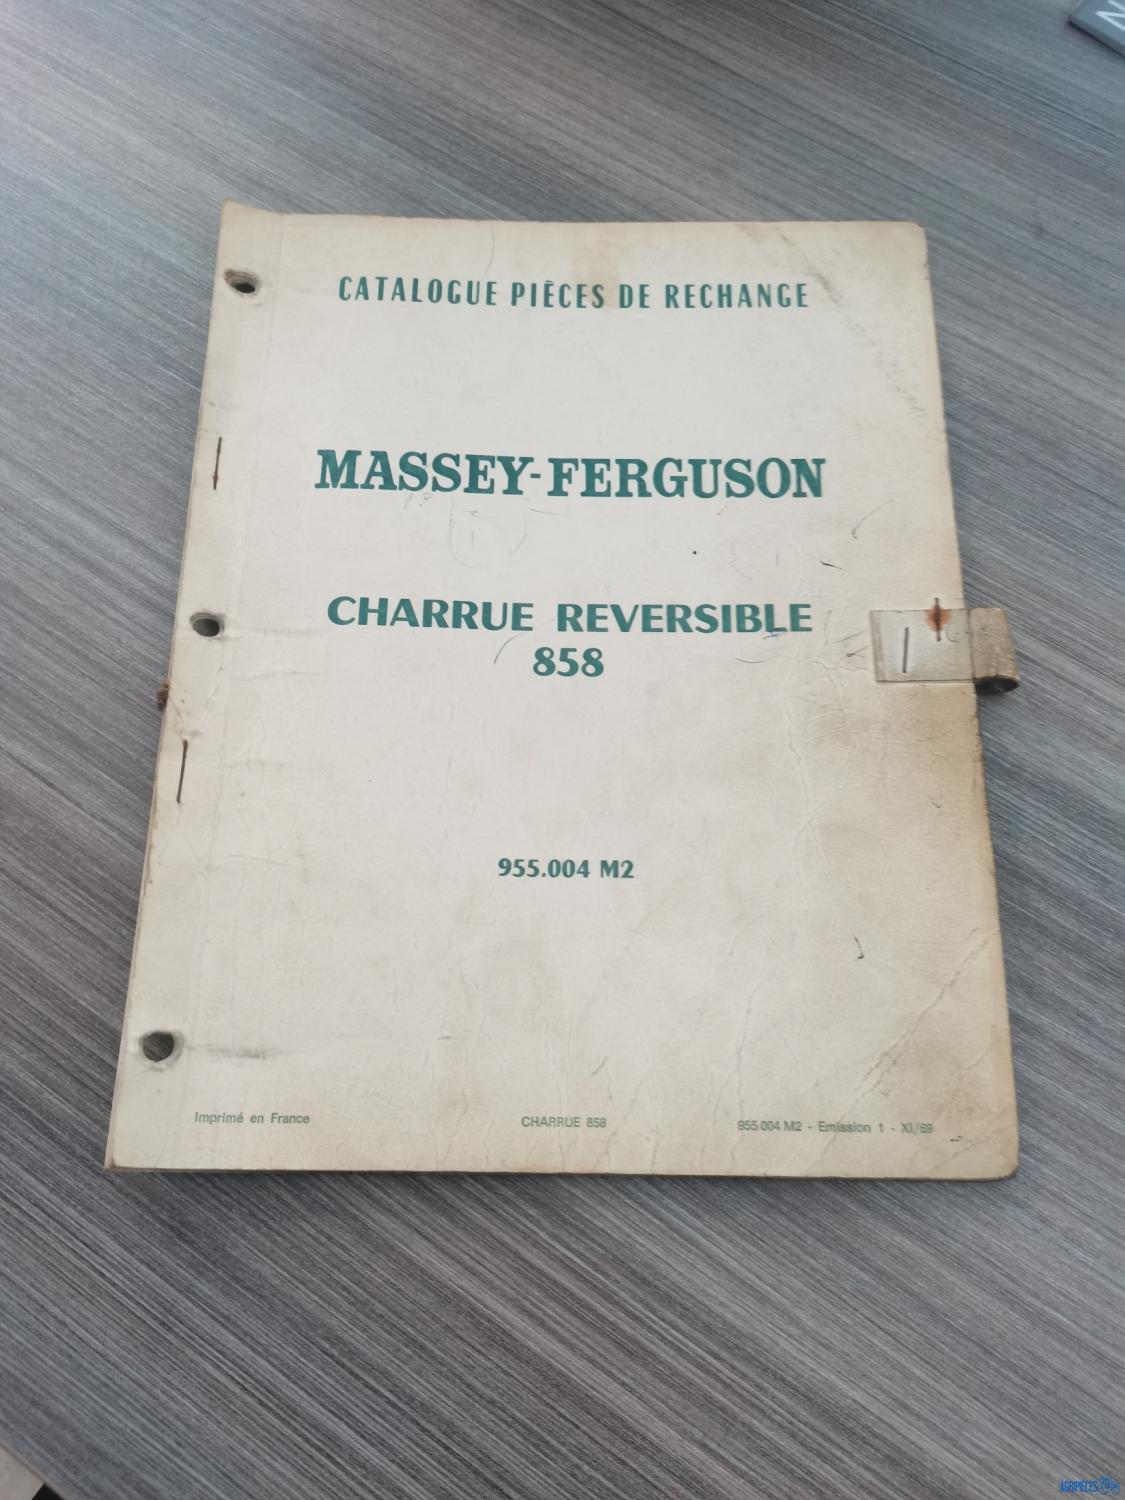 Catalogue de pièces détachées pour charrue réversible 858 Massey-Ferguson